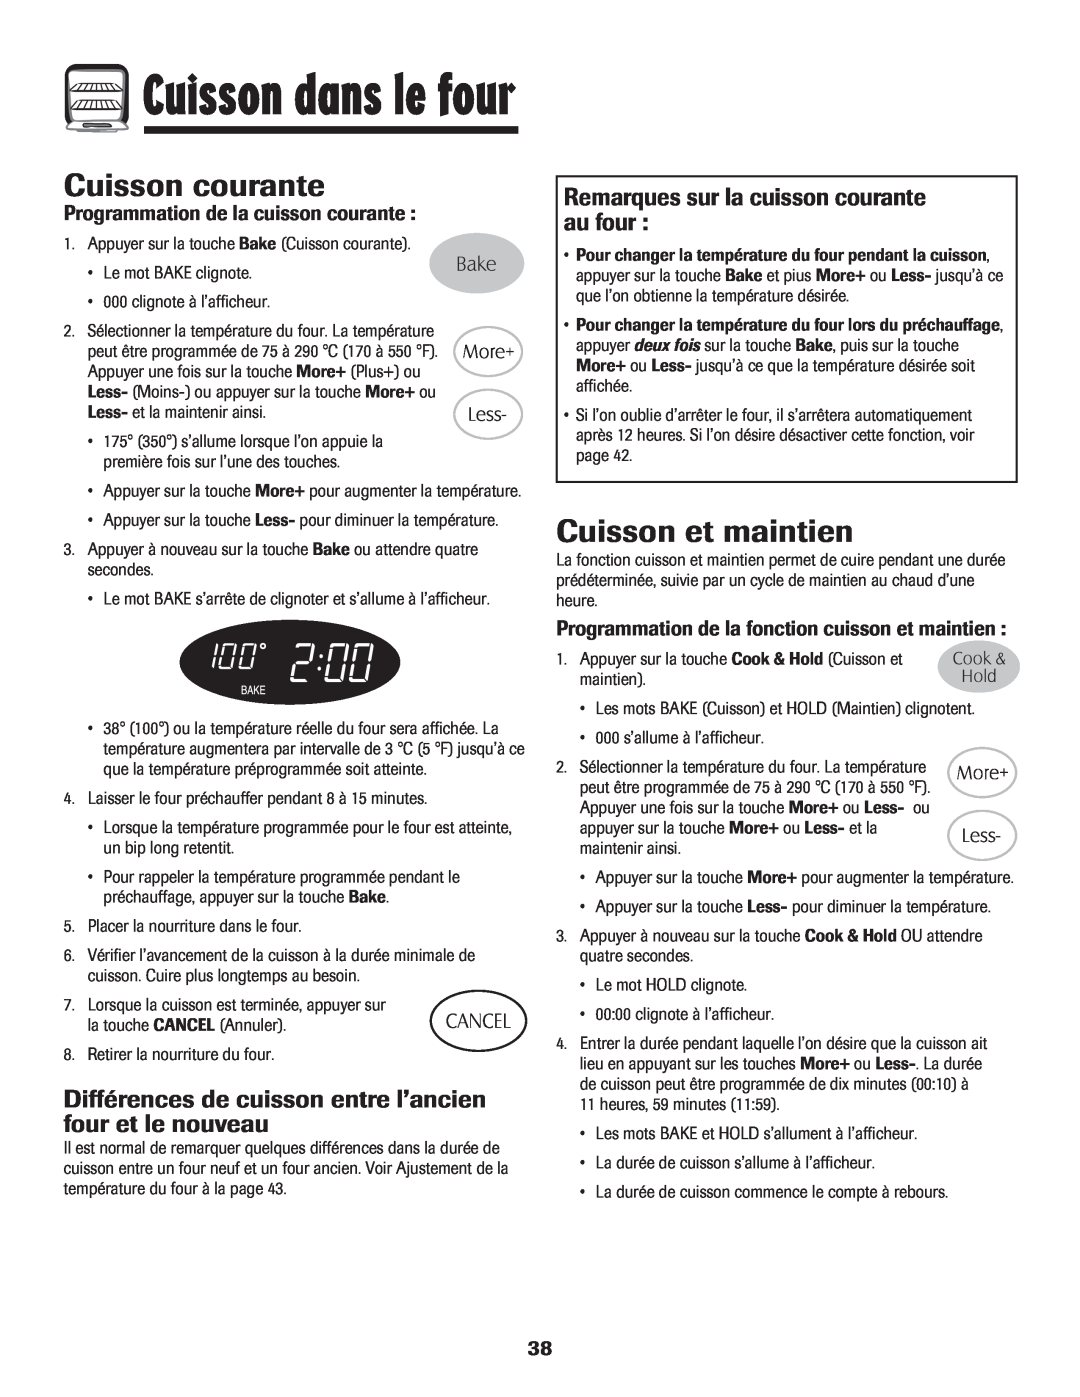 Maytag 700 manual Cuisson courante, Cuisson et maintien, Différences de cuisson entre l’ancien four et le nouveau 